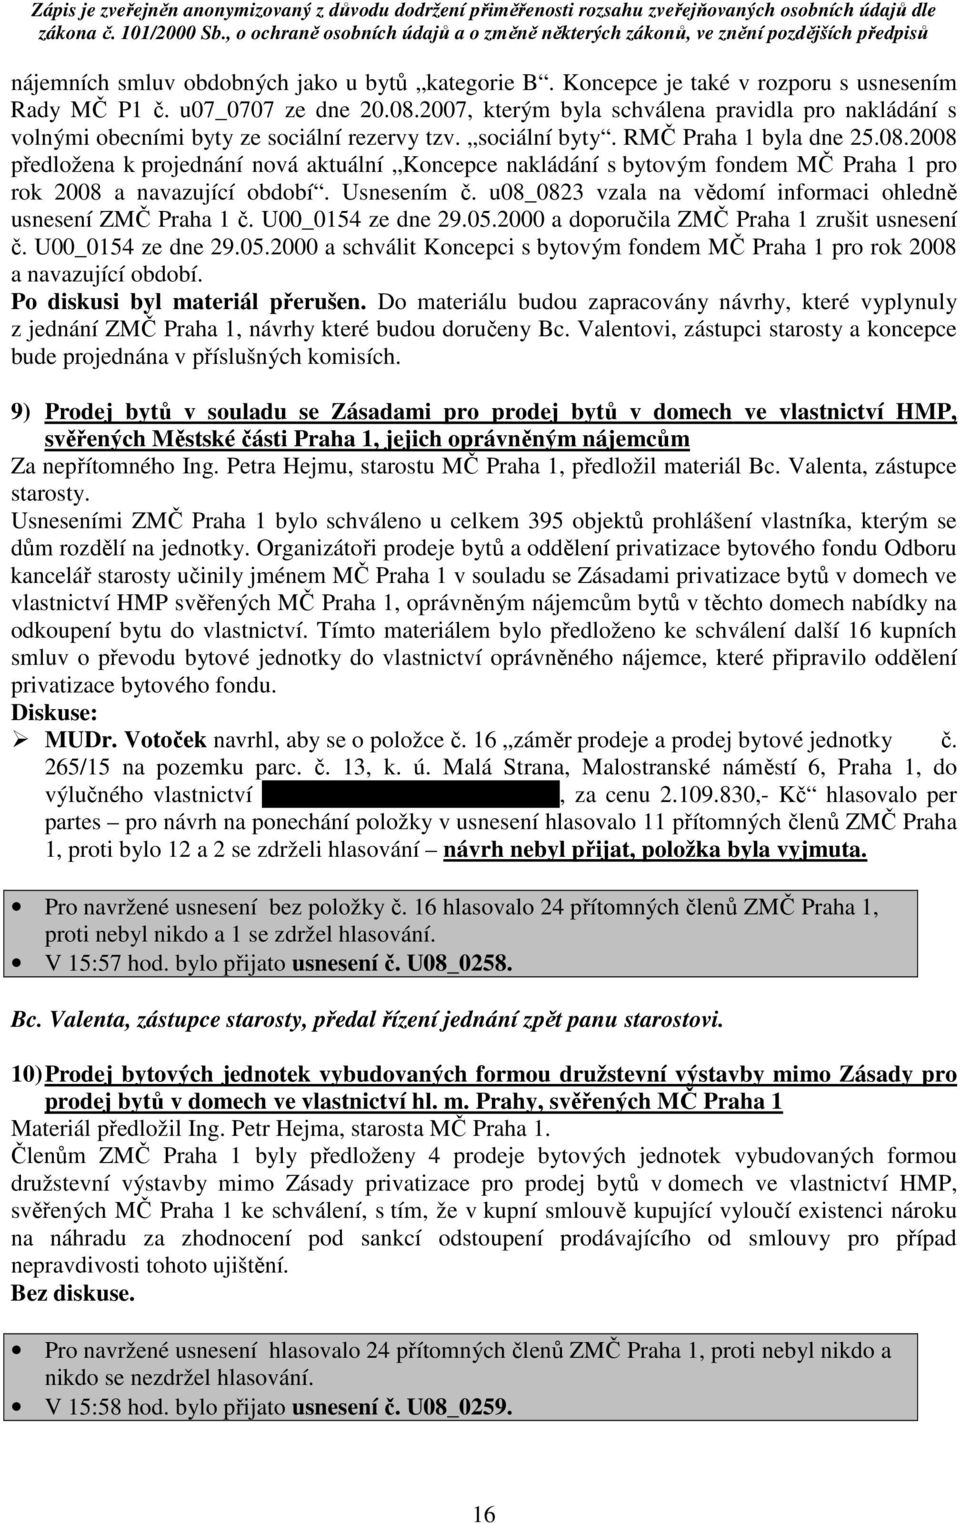 2008 předložena k projednání nová aktuální Koncepce nakládání s bytovým fondem MČ Praha 1 pro rok 2008 a navazující období. Usnesením č.